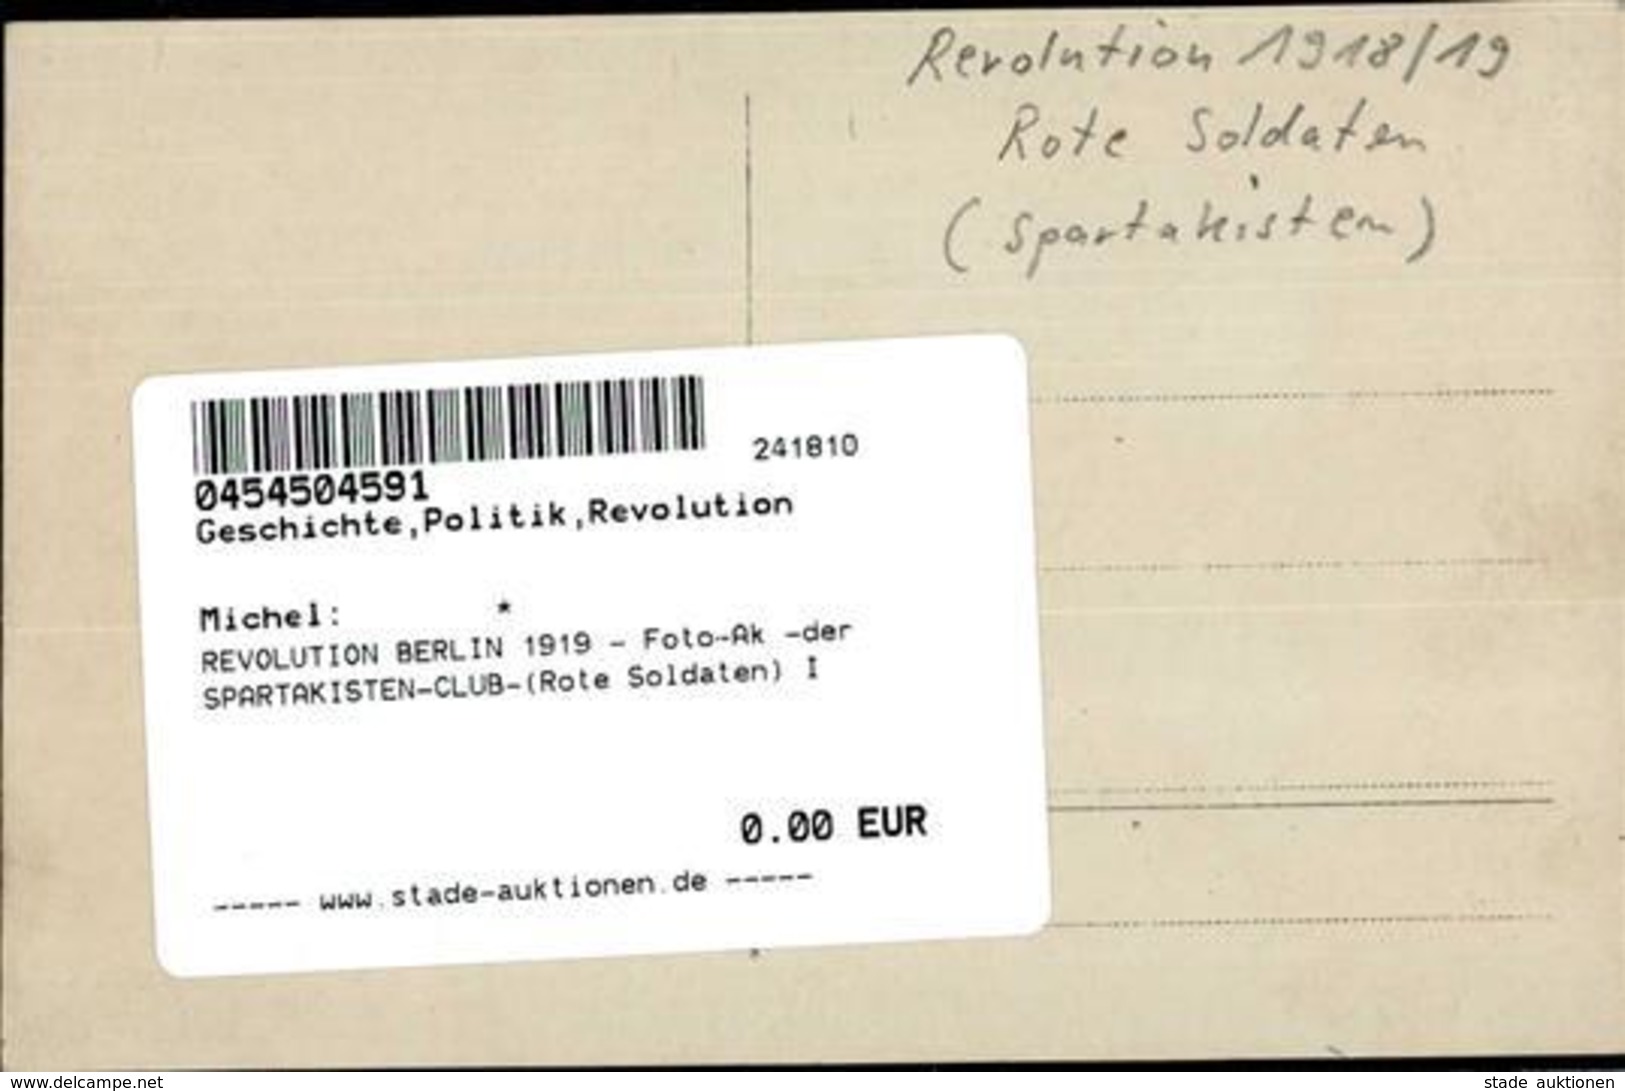 REVOLUTION BERLIN 1919 - Foto-Ak -der SPARTAKISTEN-CLUB-(Rote Soldaten) I - Warships